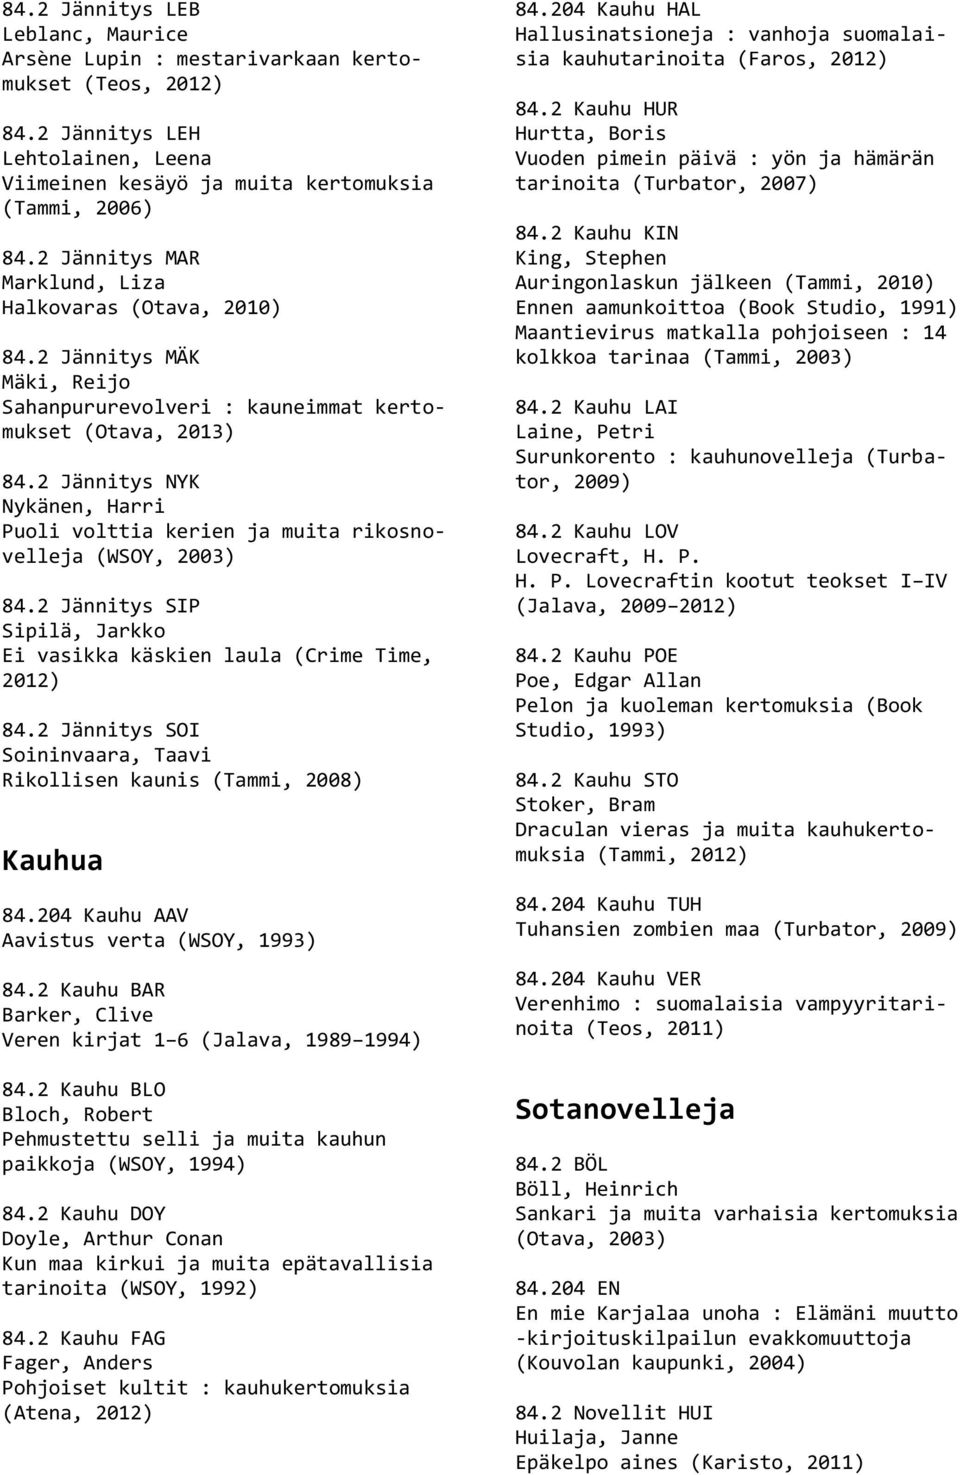 2 Jännitys NYK Nykänen, Harri Puoli volttia kerien ja muita rikosnovelleja (WSOY, 2003) 84.2 Jännitys SIP Sipilä, Jarkko Ei vasikka käskien laula (Crime Time, 2012) 84.